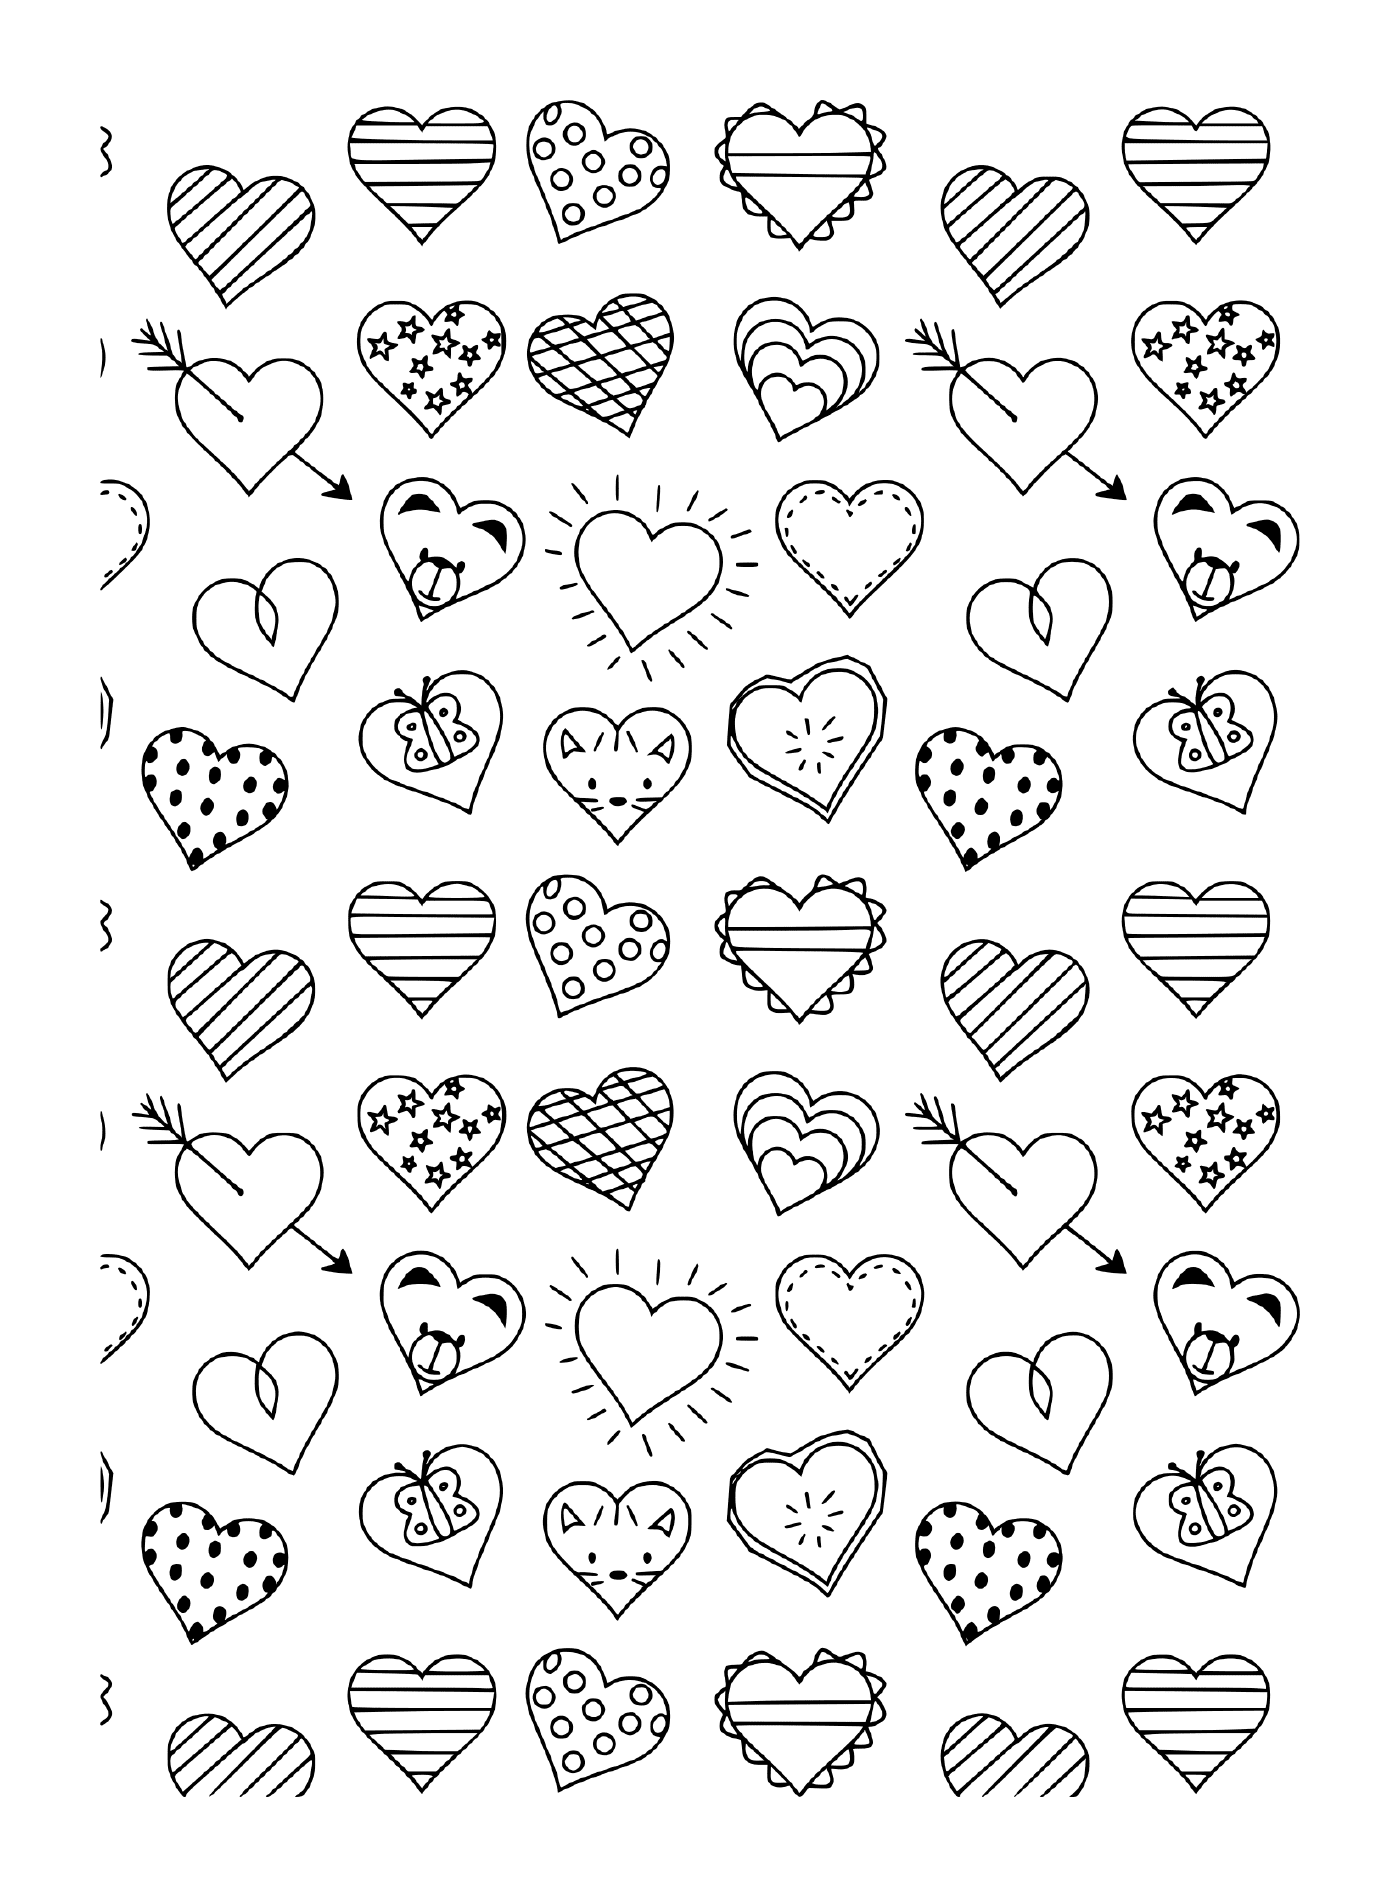  Um padrão preto e branco de diferentes corações e flechas 